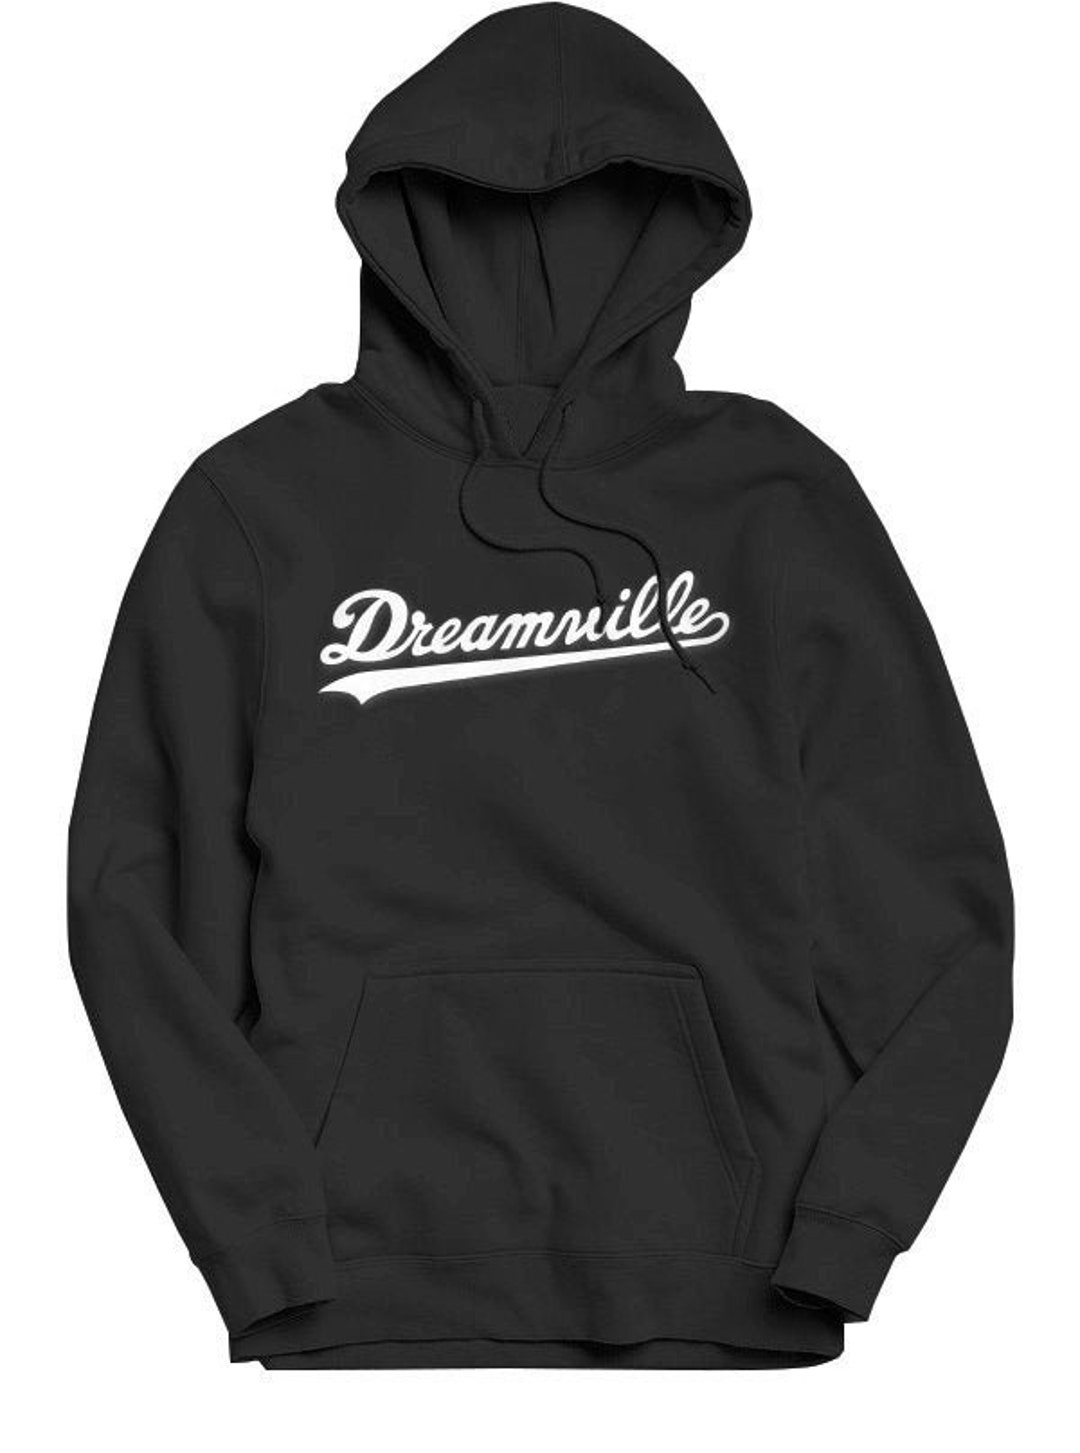 Dreamville Hoodie J Cole Music Gift Hip Hop Hoodie - Etsy